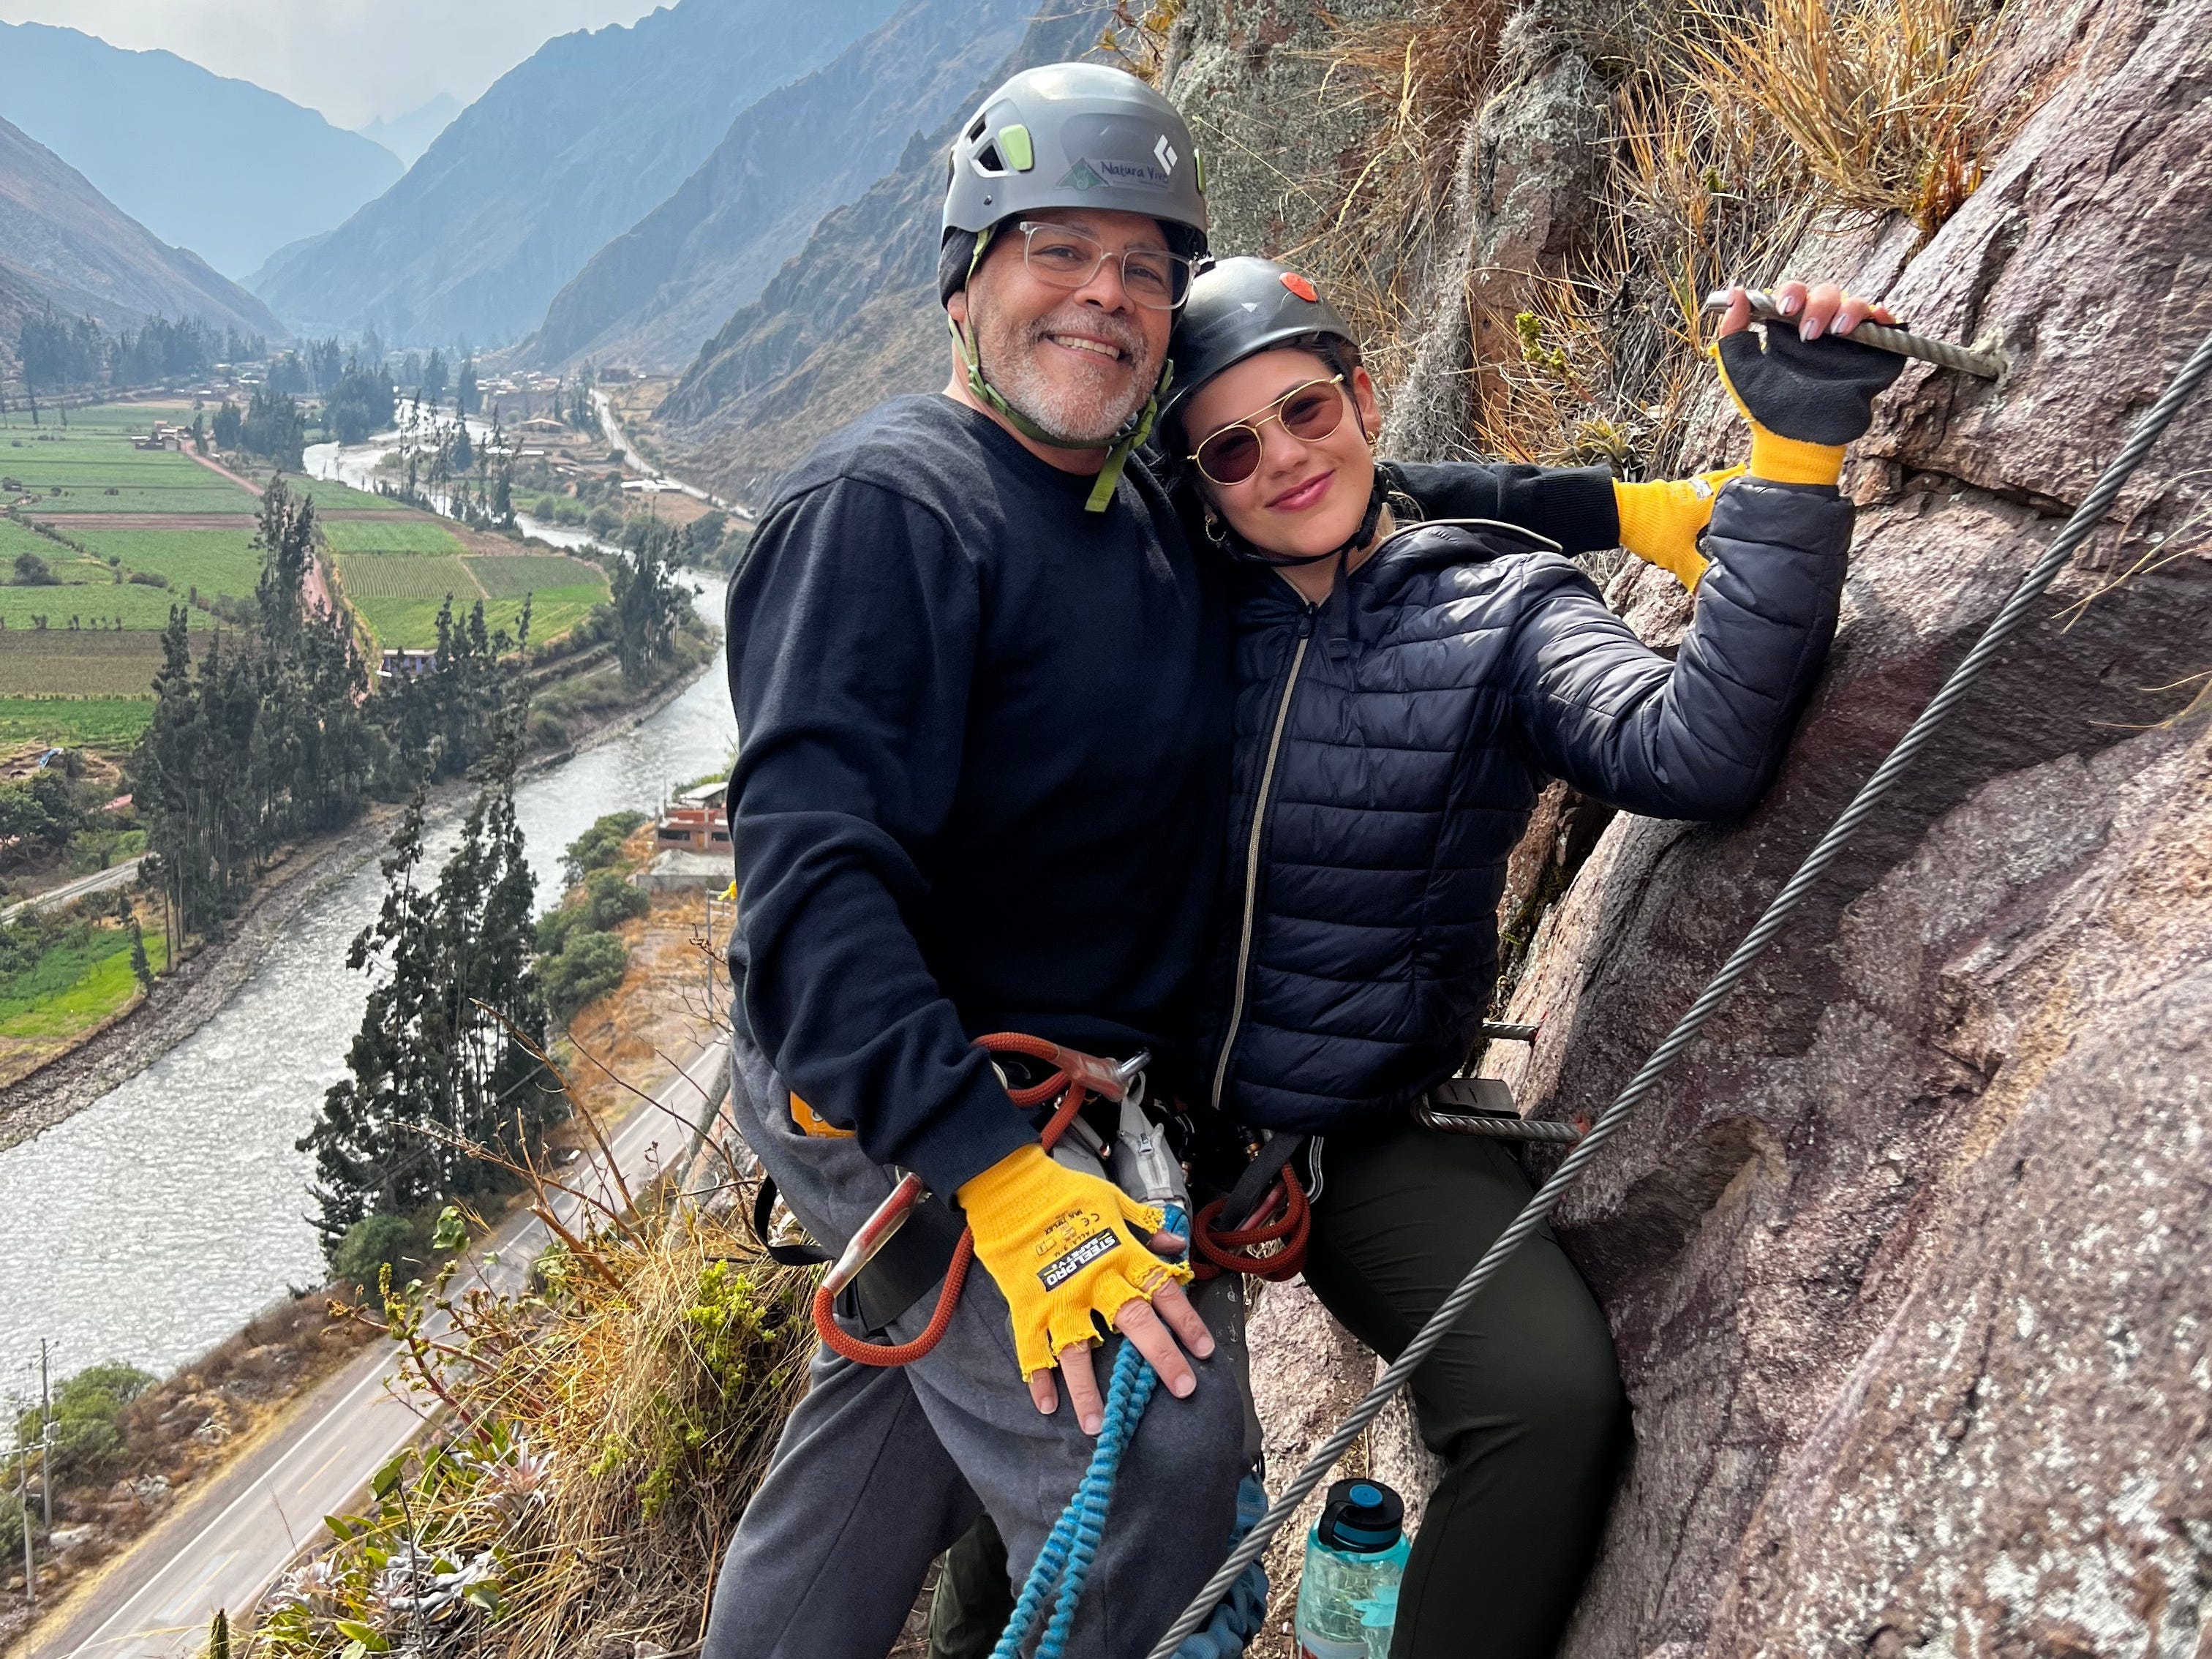 Victoria und ihr Vater lächeln für ein Foto, während sie einen Klettersteig an einer Klippe erklimmen.